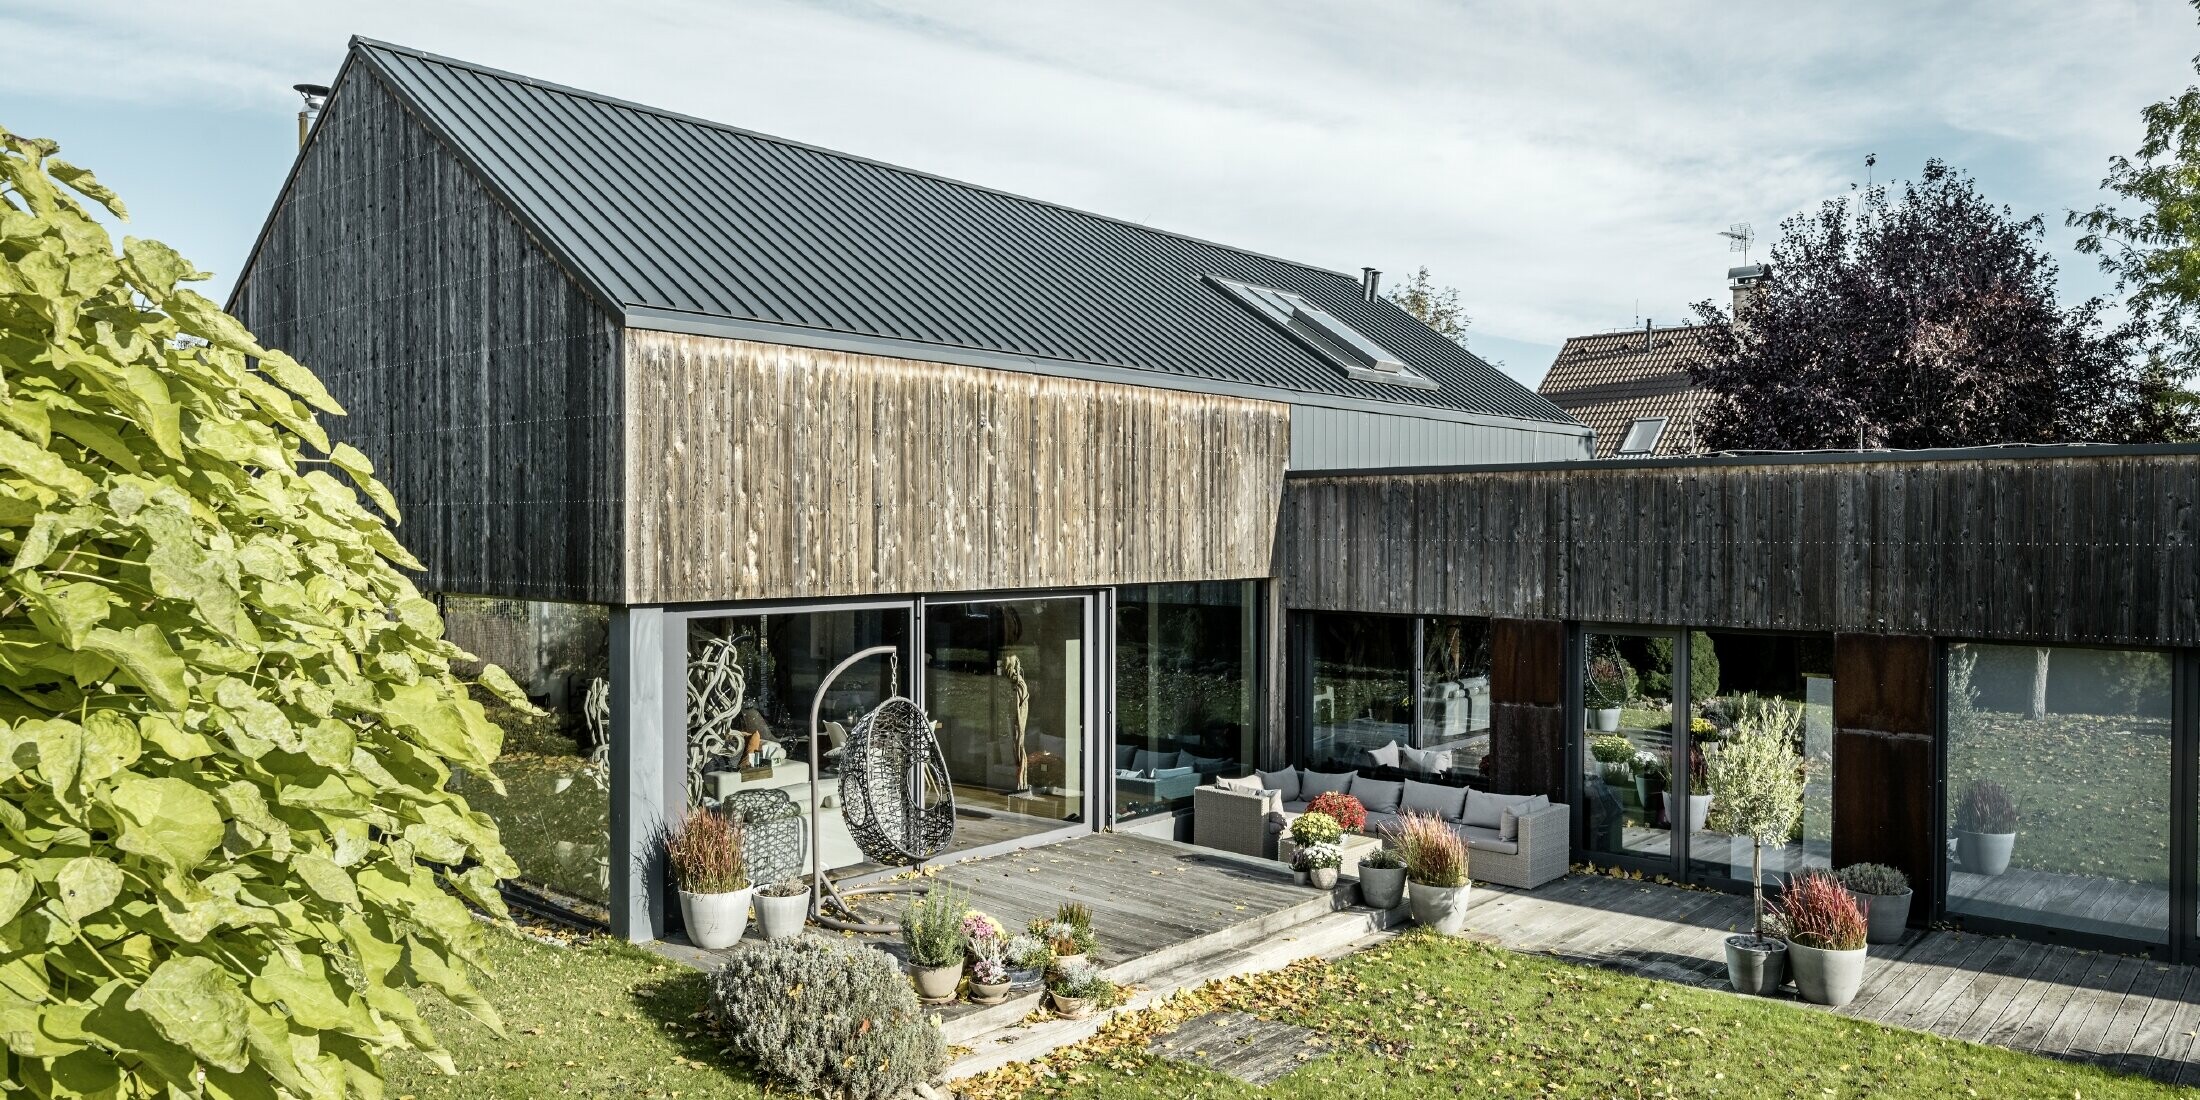 Dom jednorodzinny z dachem dwuspadowym, pokryty PREFALZ w technologii rąbka podwójnego w kolorze antracytowym z elewacją z postarzanego drewna. Z pięknym tarasem drewnianym i dużymi oknami na parterze.